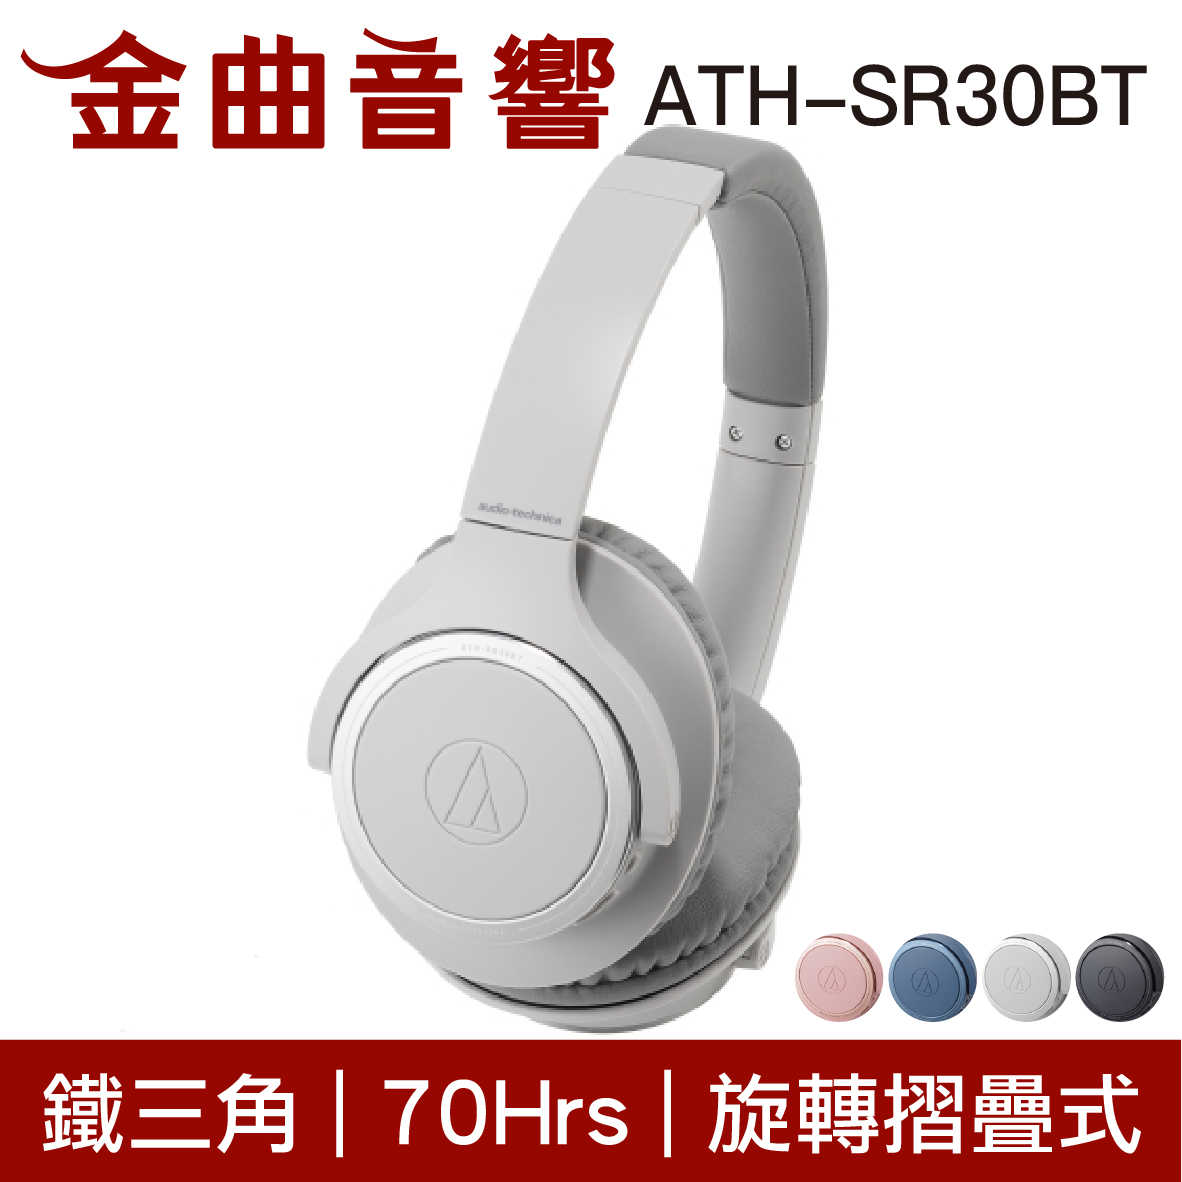 鐵三角 ATH-SR30BT 兒童耳機 大人 皆適用 藍牙 無線 耳罩式耳機 | 金曲音響